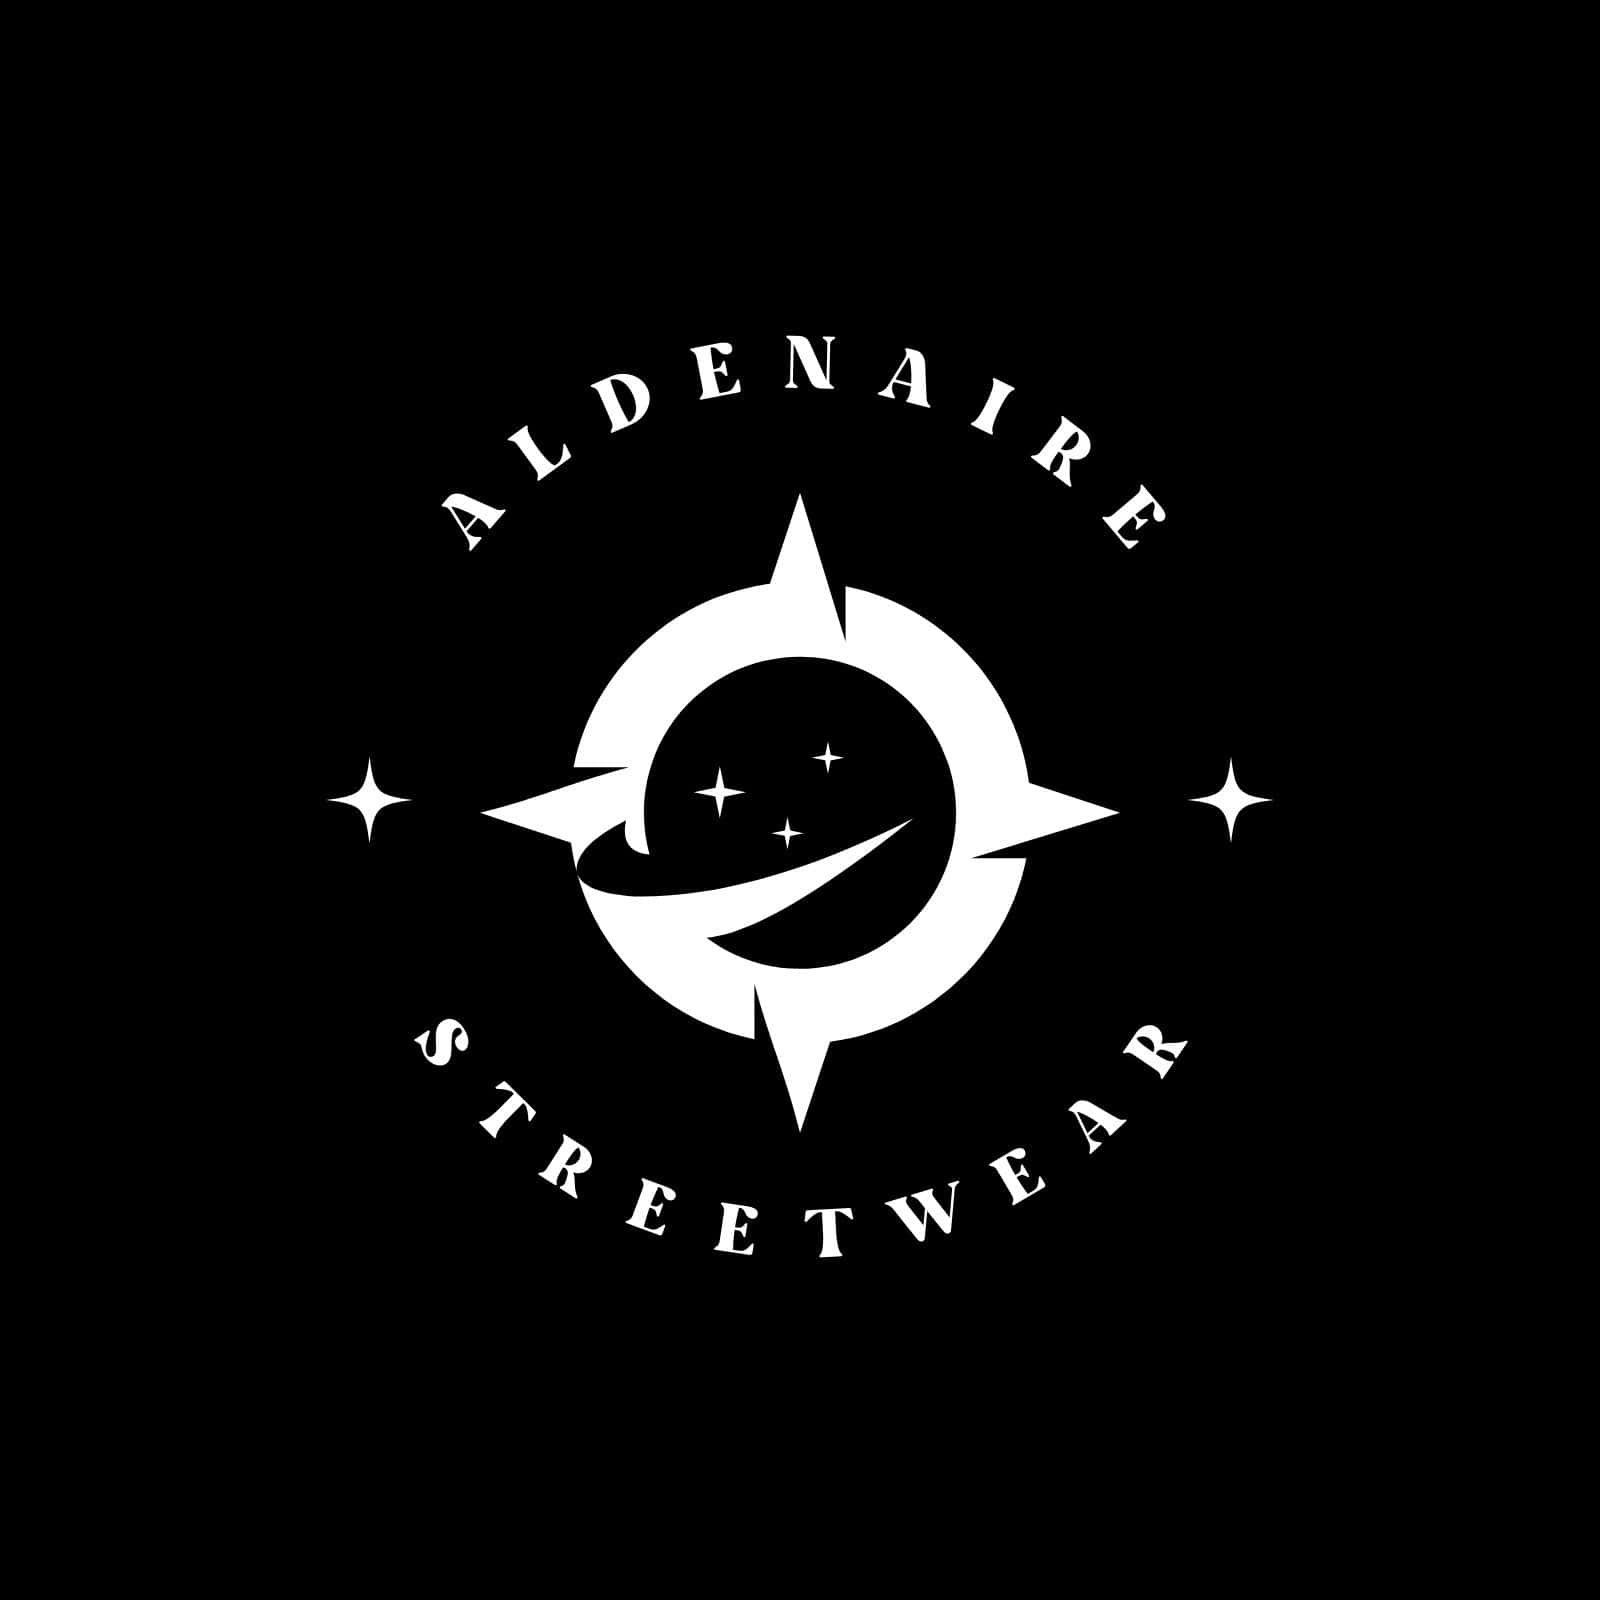 Aldenaire Streetwear Logo Black Background Wallpaper